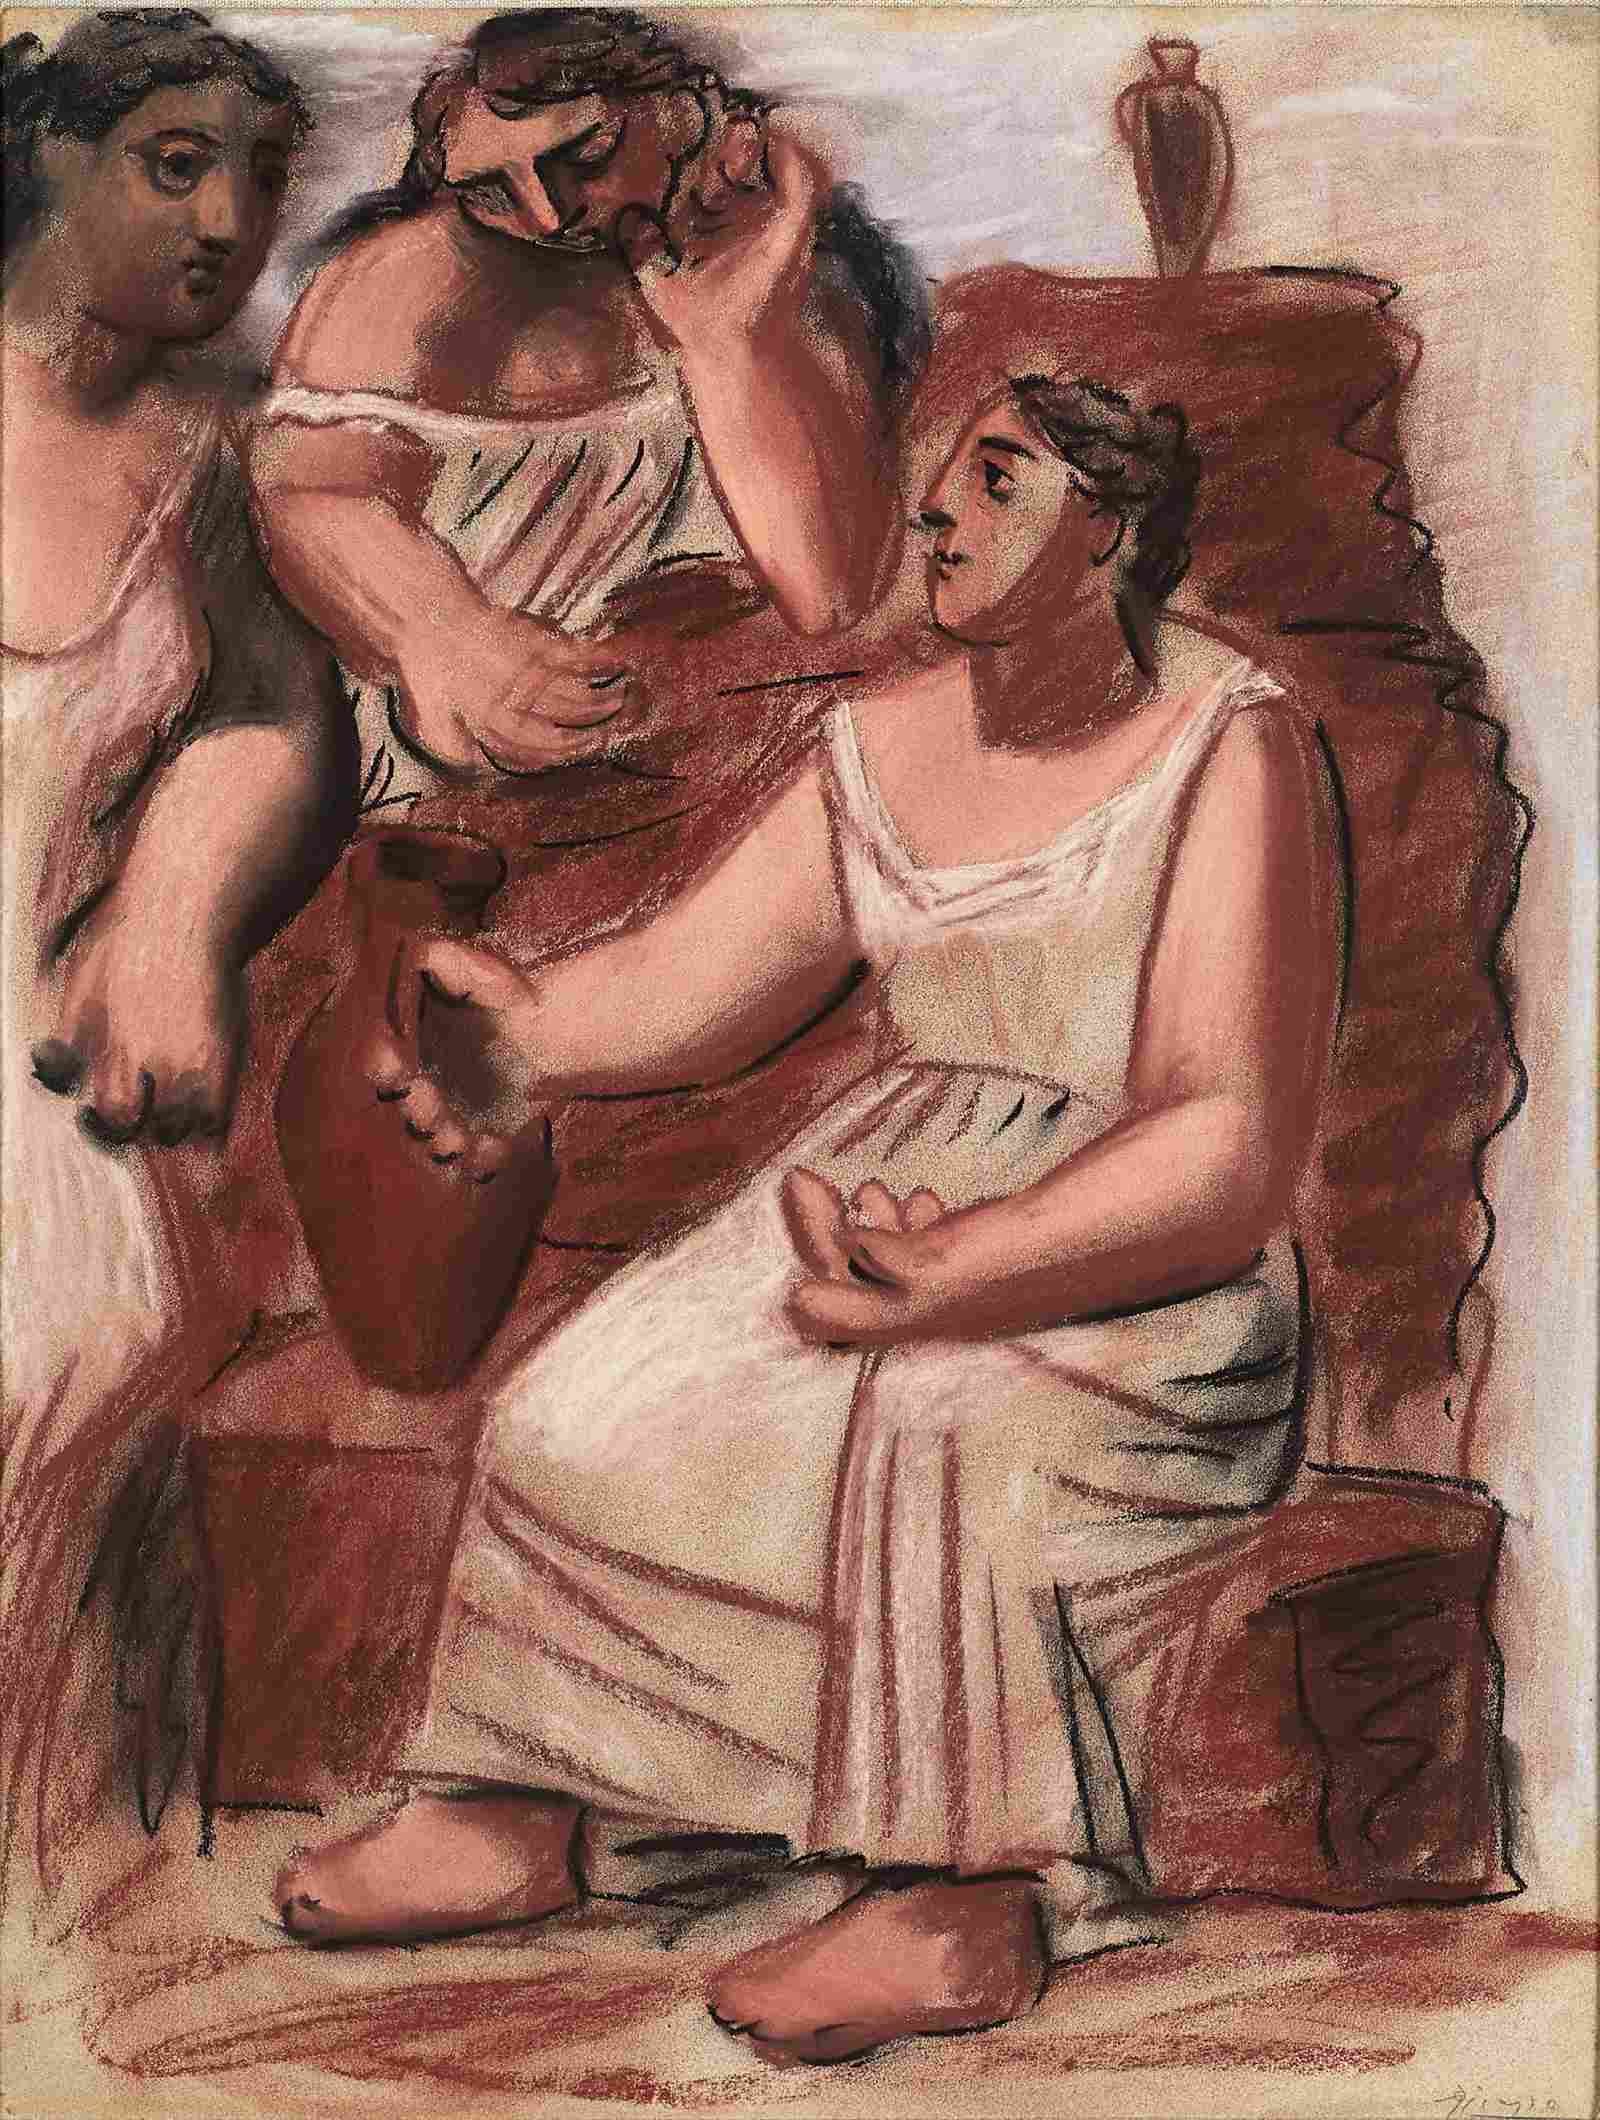 Pablo Picasso.
Tres mujeres en la fuente, 1921.
Pastel sobre papel adherido a lienzo, 66 x 51 cm. Colección privada, cortesía Tobias Mueller Modern Art, Zúrich. - imagen 2